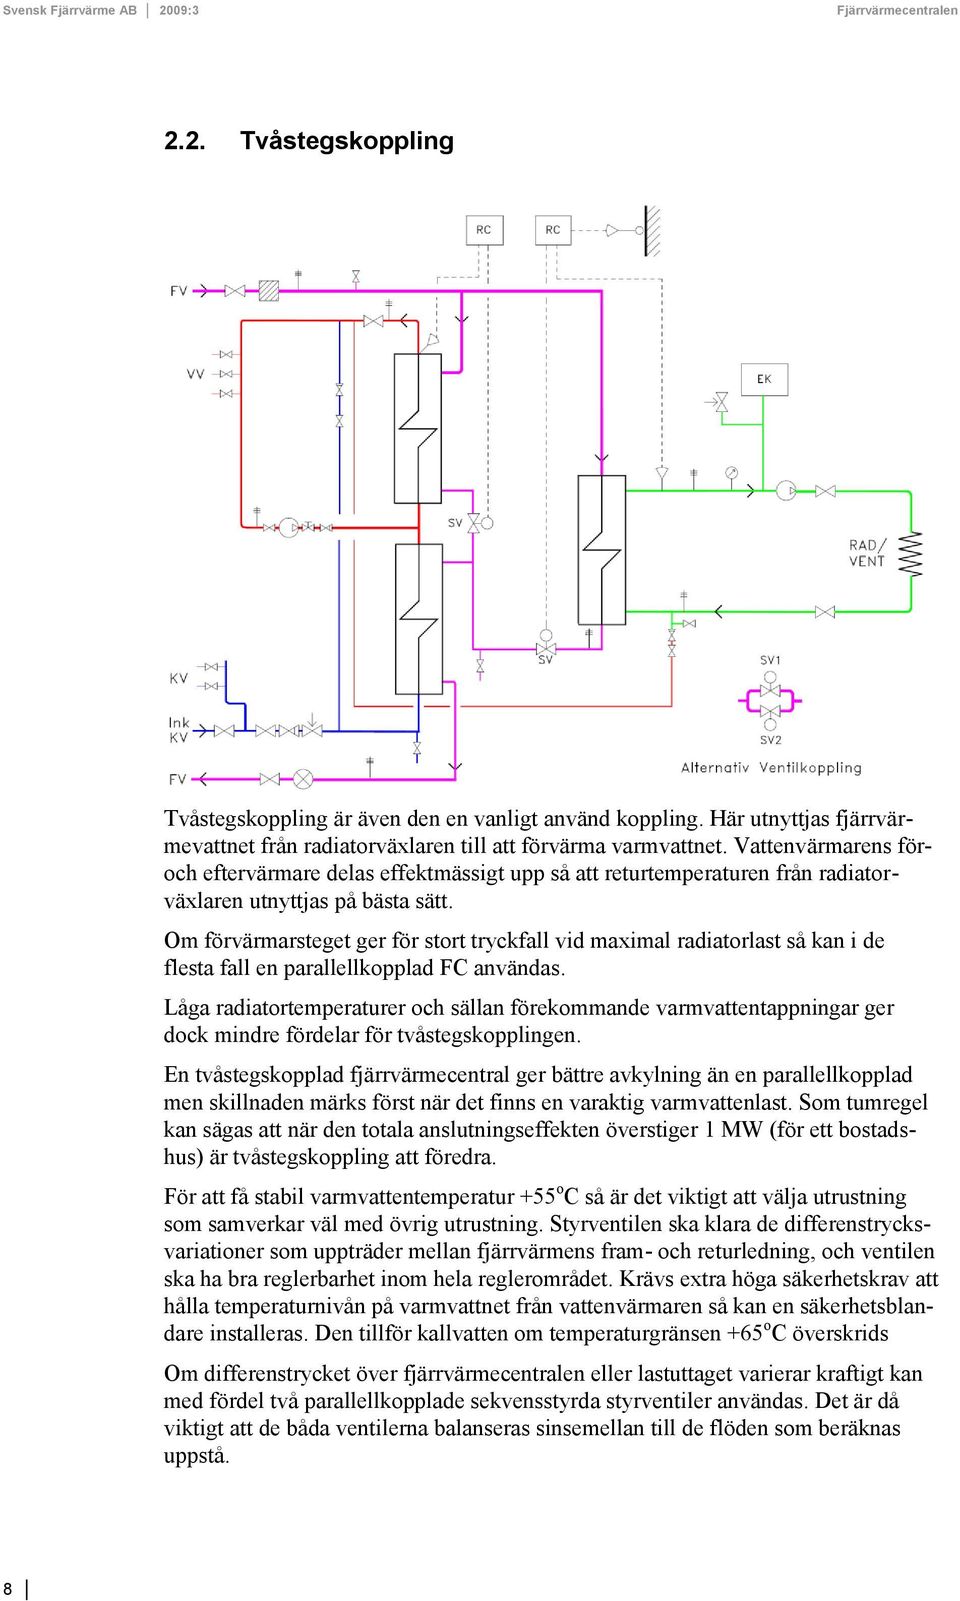 Om förvärmarsteget ger för stort tryckfall vid maximal radiatorlast så kan i de flesta fall en parallellkopplad FC användas.